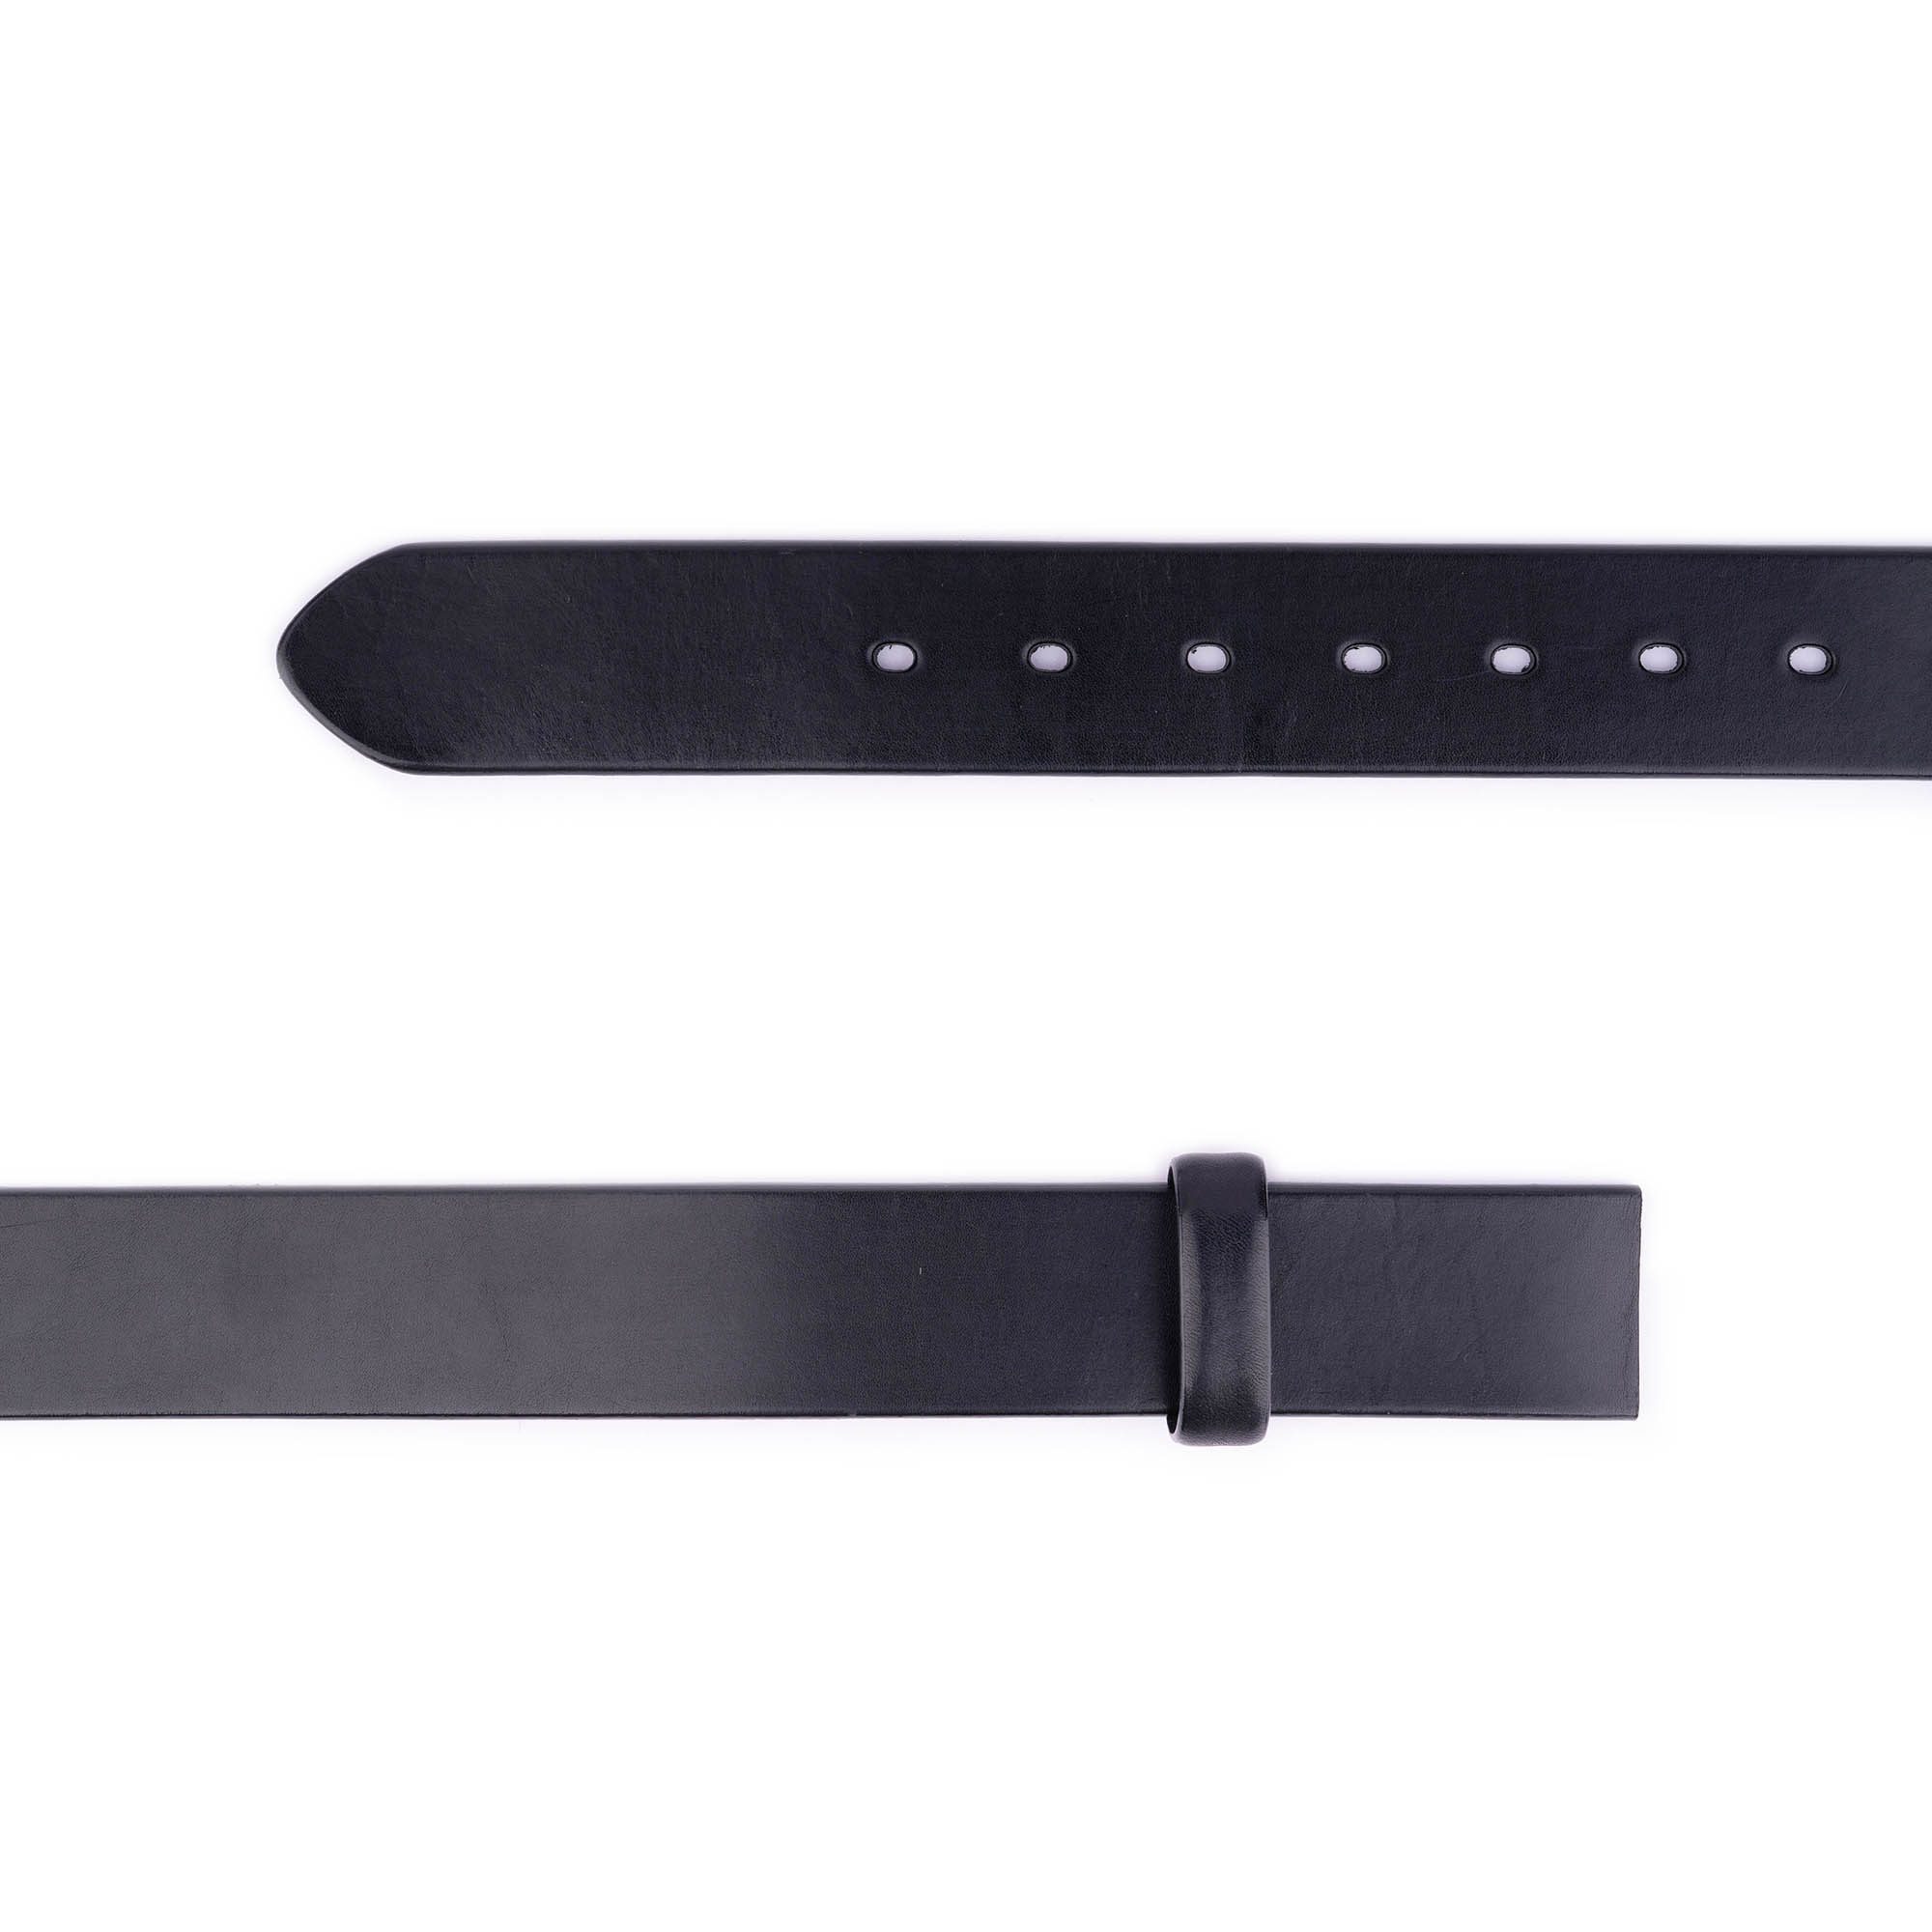 Buy Black Full Grain Leather Belt Strap For Clamp Buckles